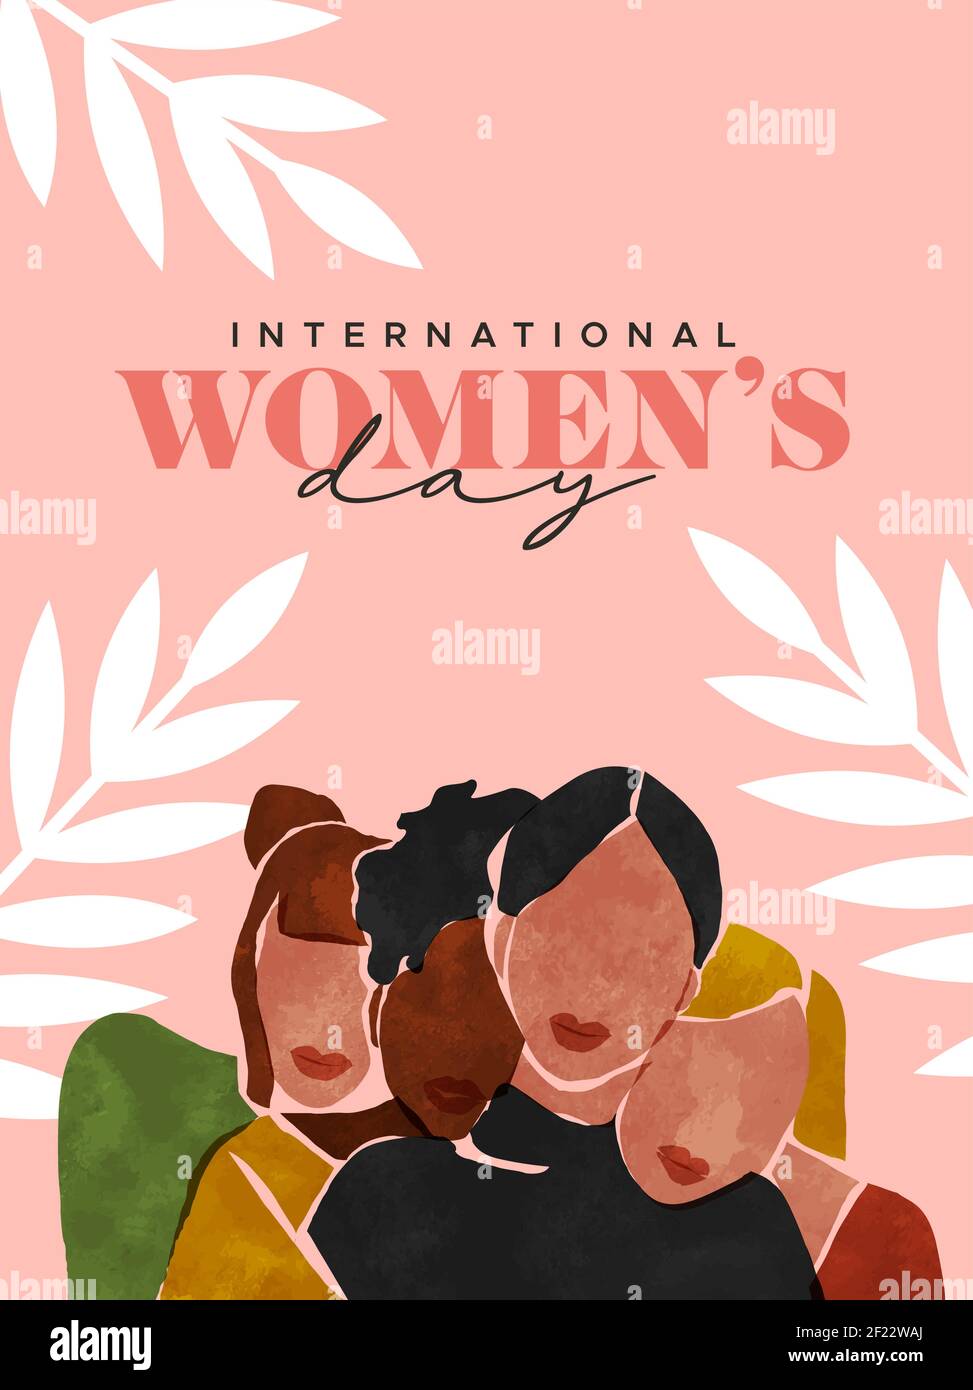 Internationaler Frauentag Illustration von Frauen Freundinnen Porträt umarmt zusammen. Multi ethnische Mädchen Charaktere in modernen abstrakten Malstil für Stock Vektor